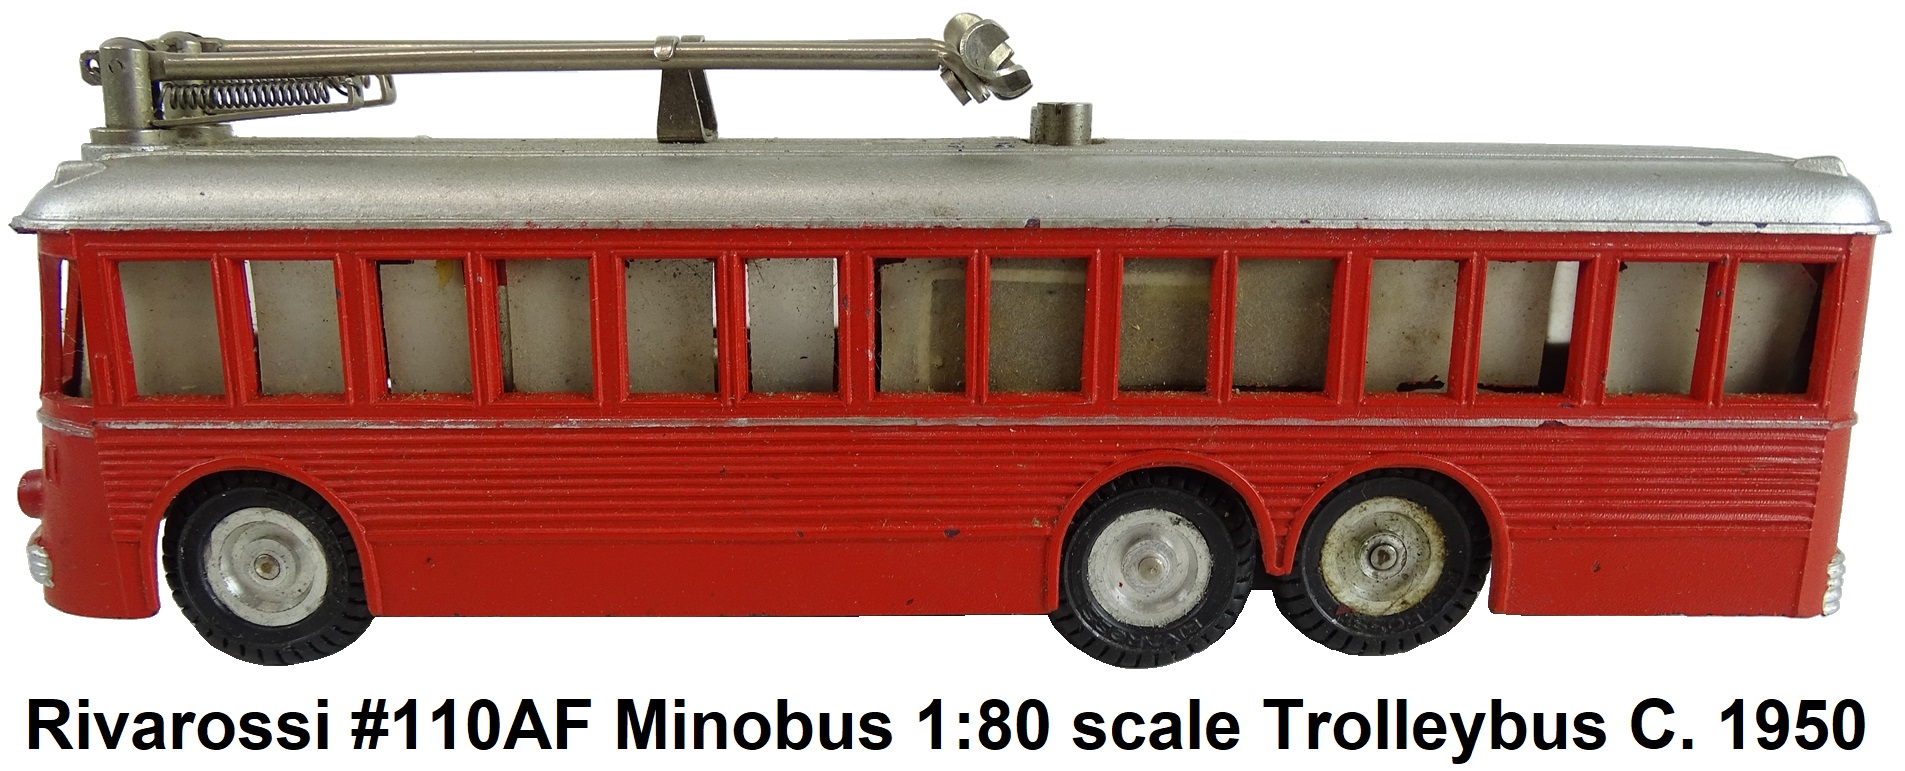 Rivarossi MinoBus motorized trolleybus circa 1950